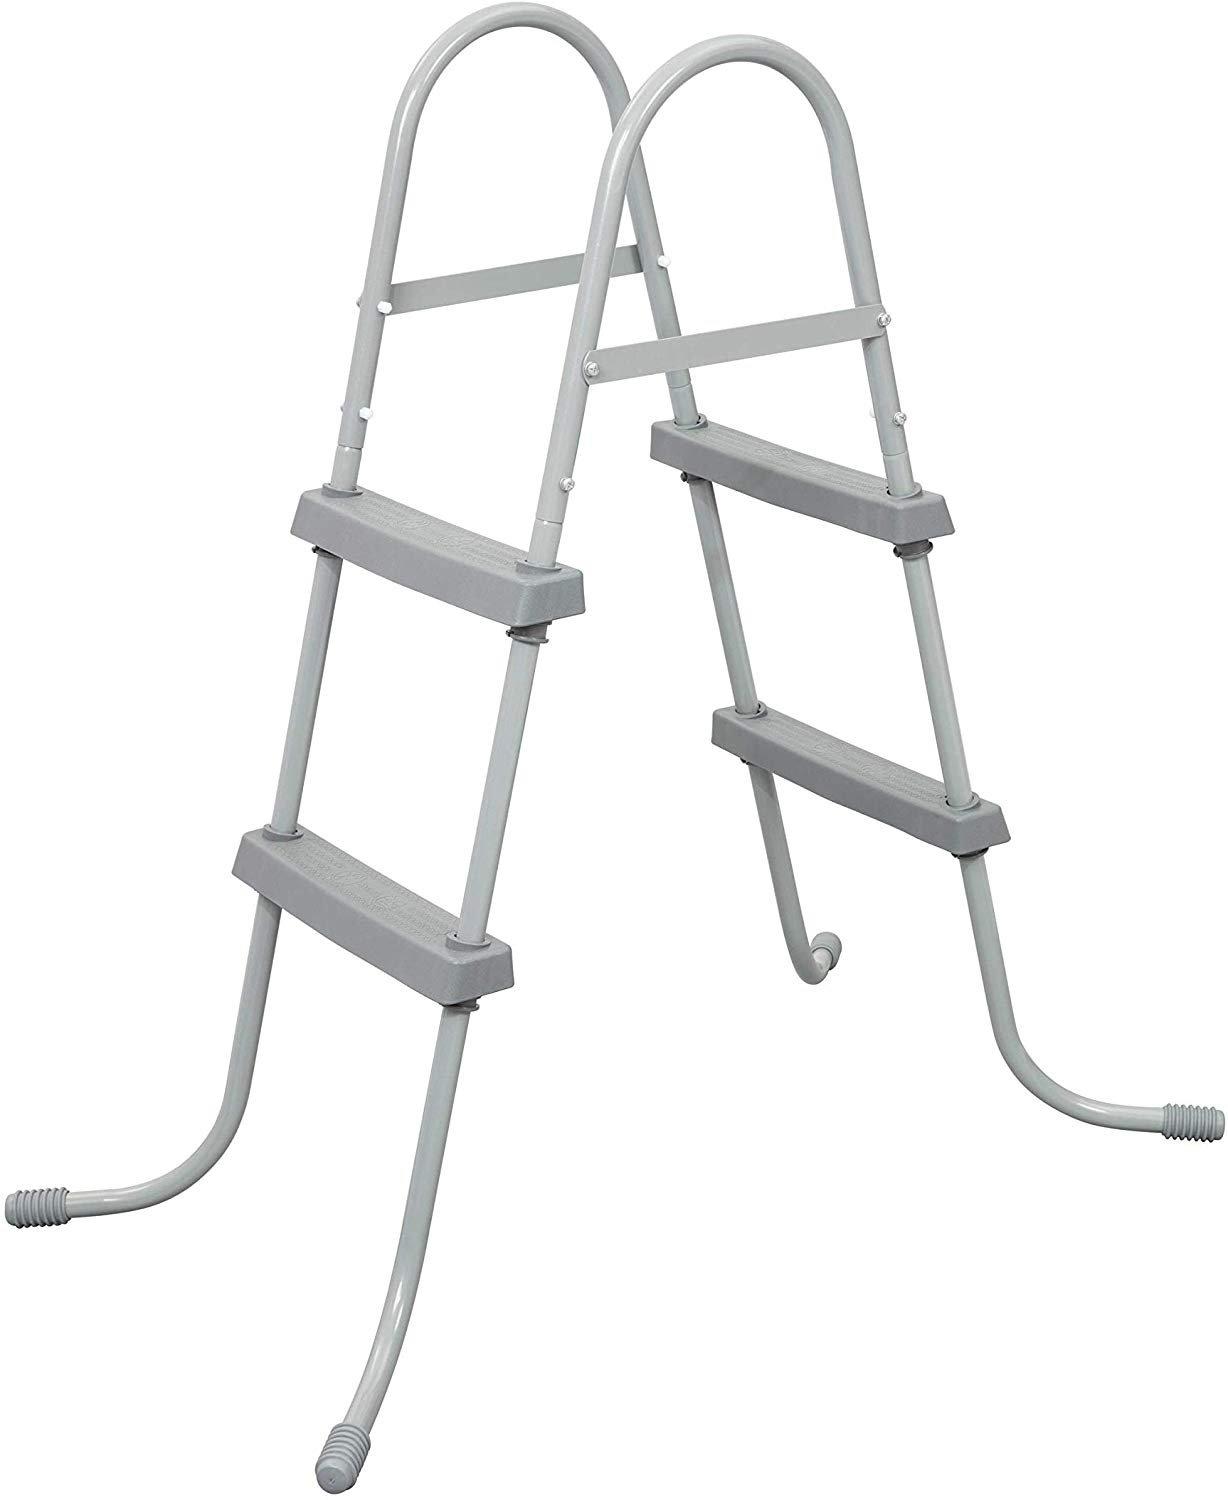 Bestway 33" Pool Ladder